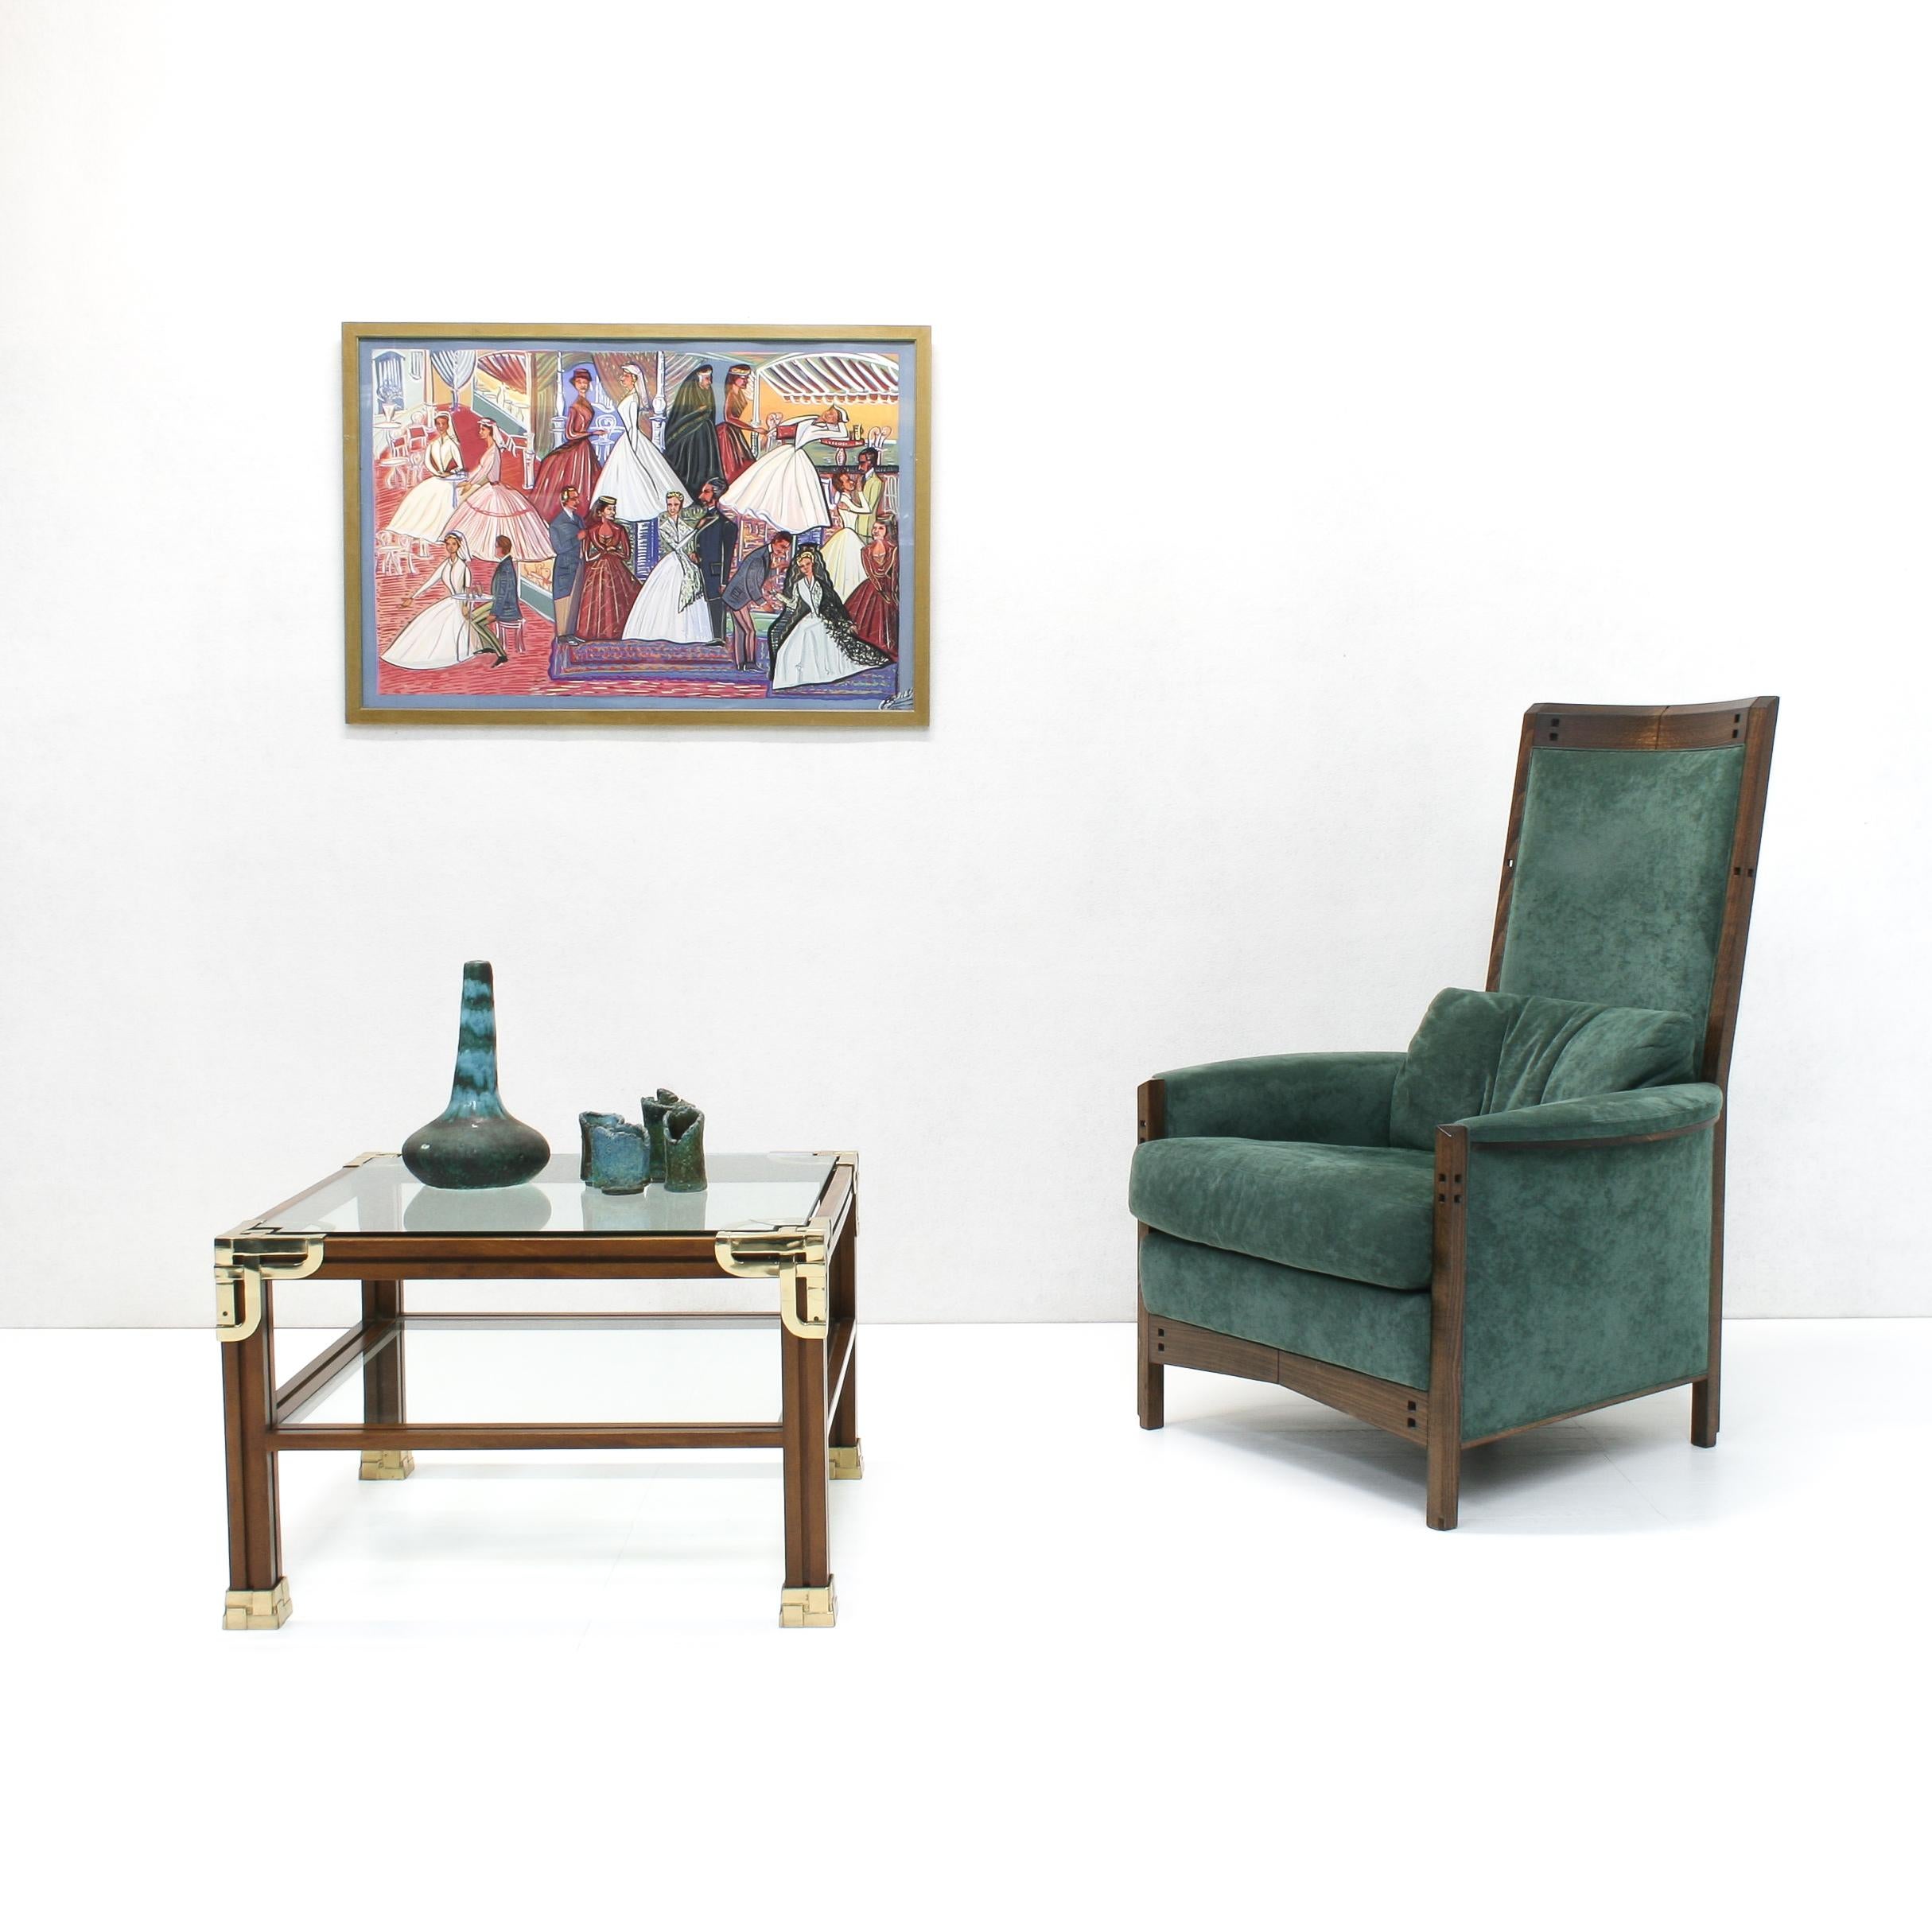 Dieser stilvolle Sessel mit hoher Rückenlehne Peggy aus der Serie Galaxy wurde von Umberto Asnago für den renommierten italienischen Möbelhersteller Giorgetti entworfen.

Das Gestell aus Nussbaumholz ist mit durchsichtigen Schnitzereien im